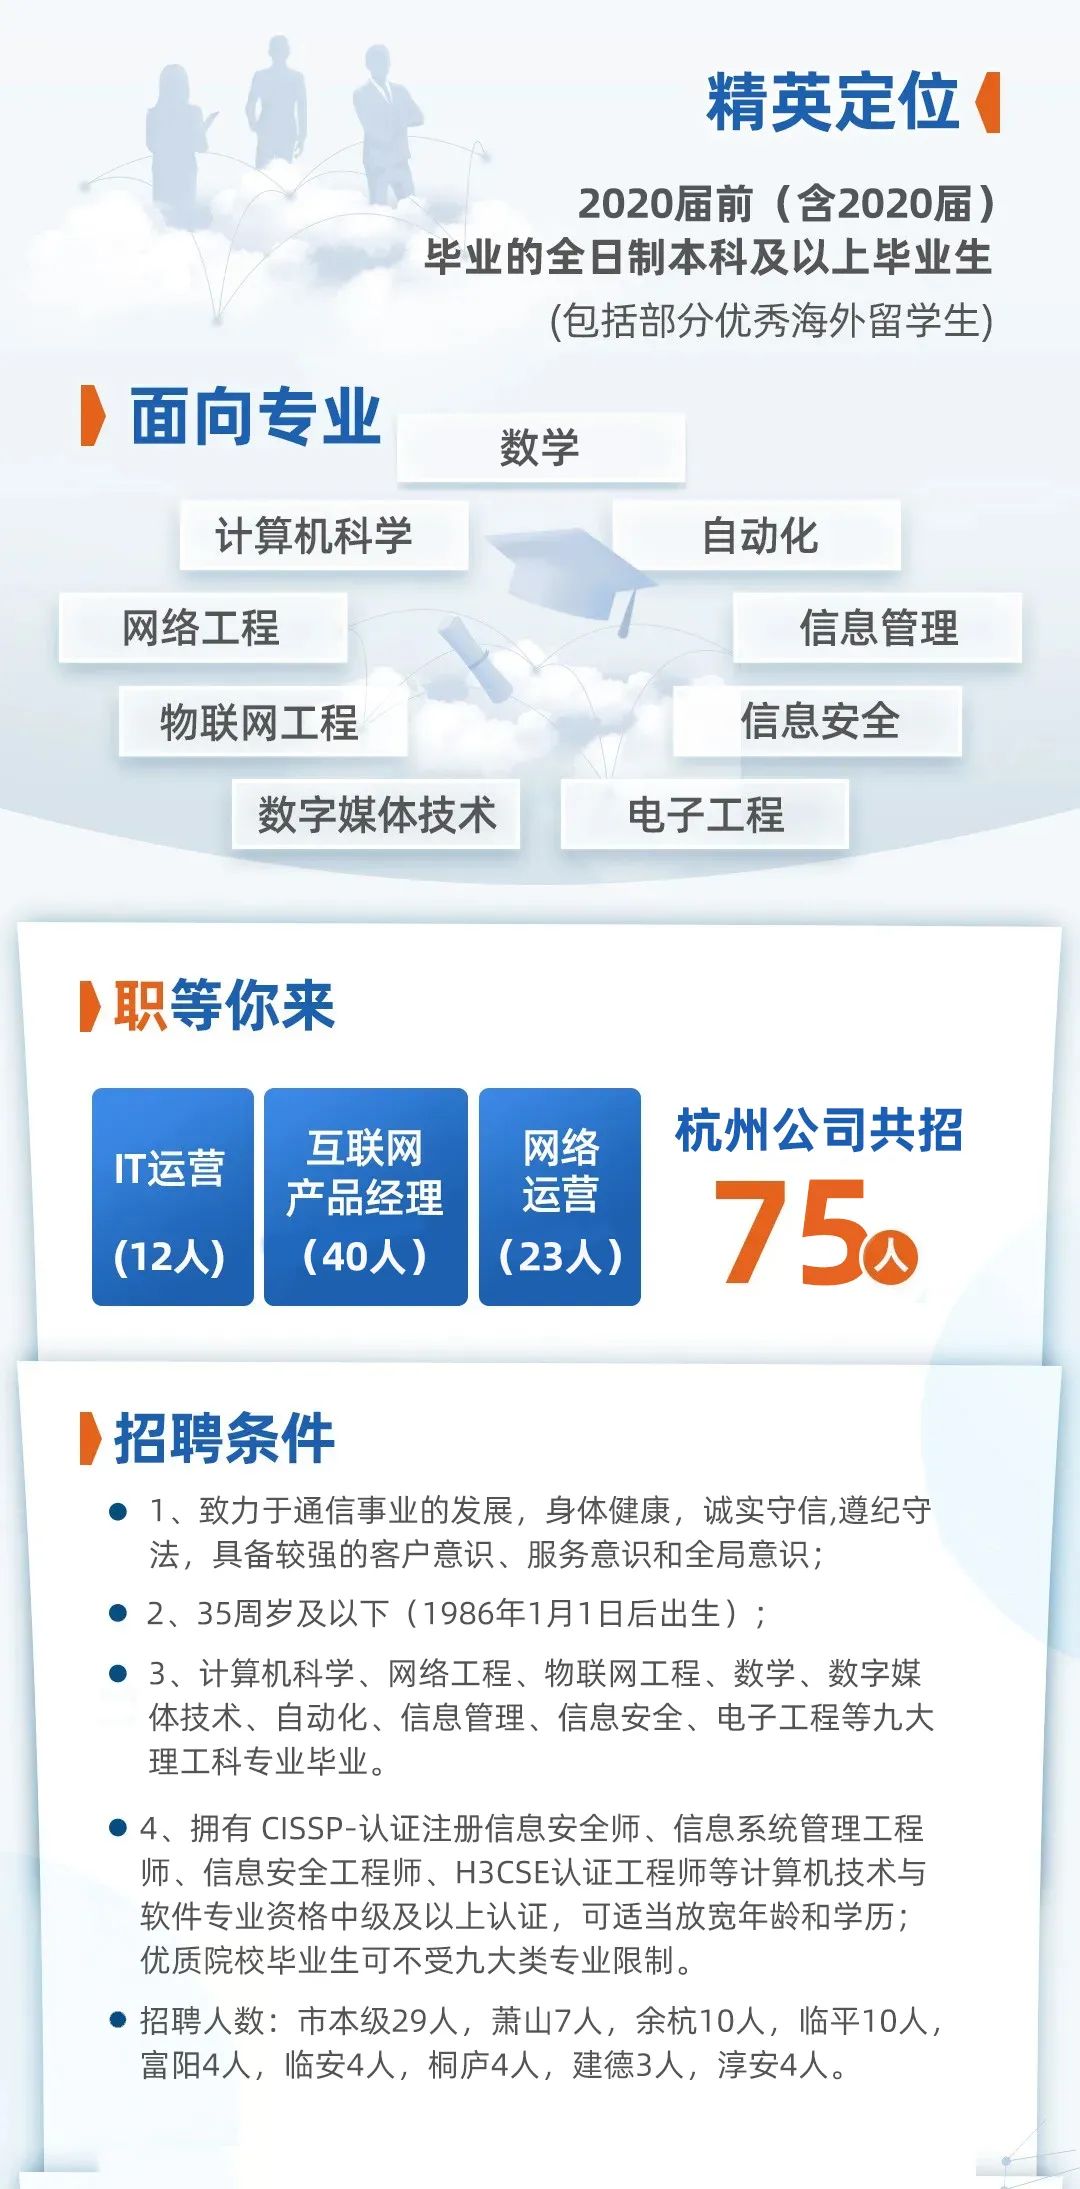 招贤纳士丨中国电信股份有限公司杭州分公司2021年社会招聘